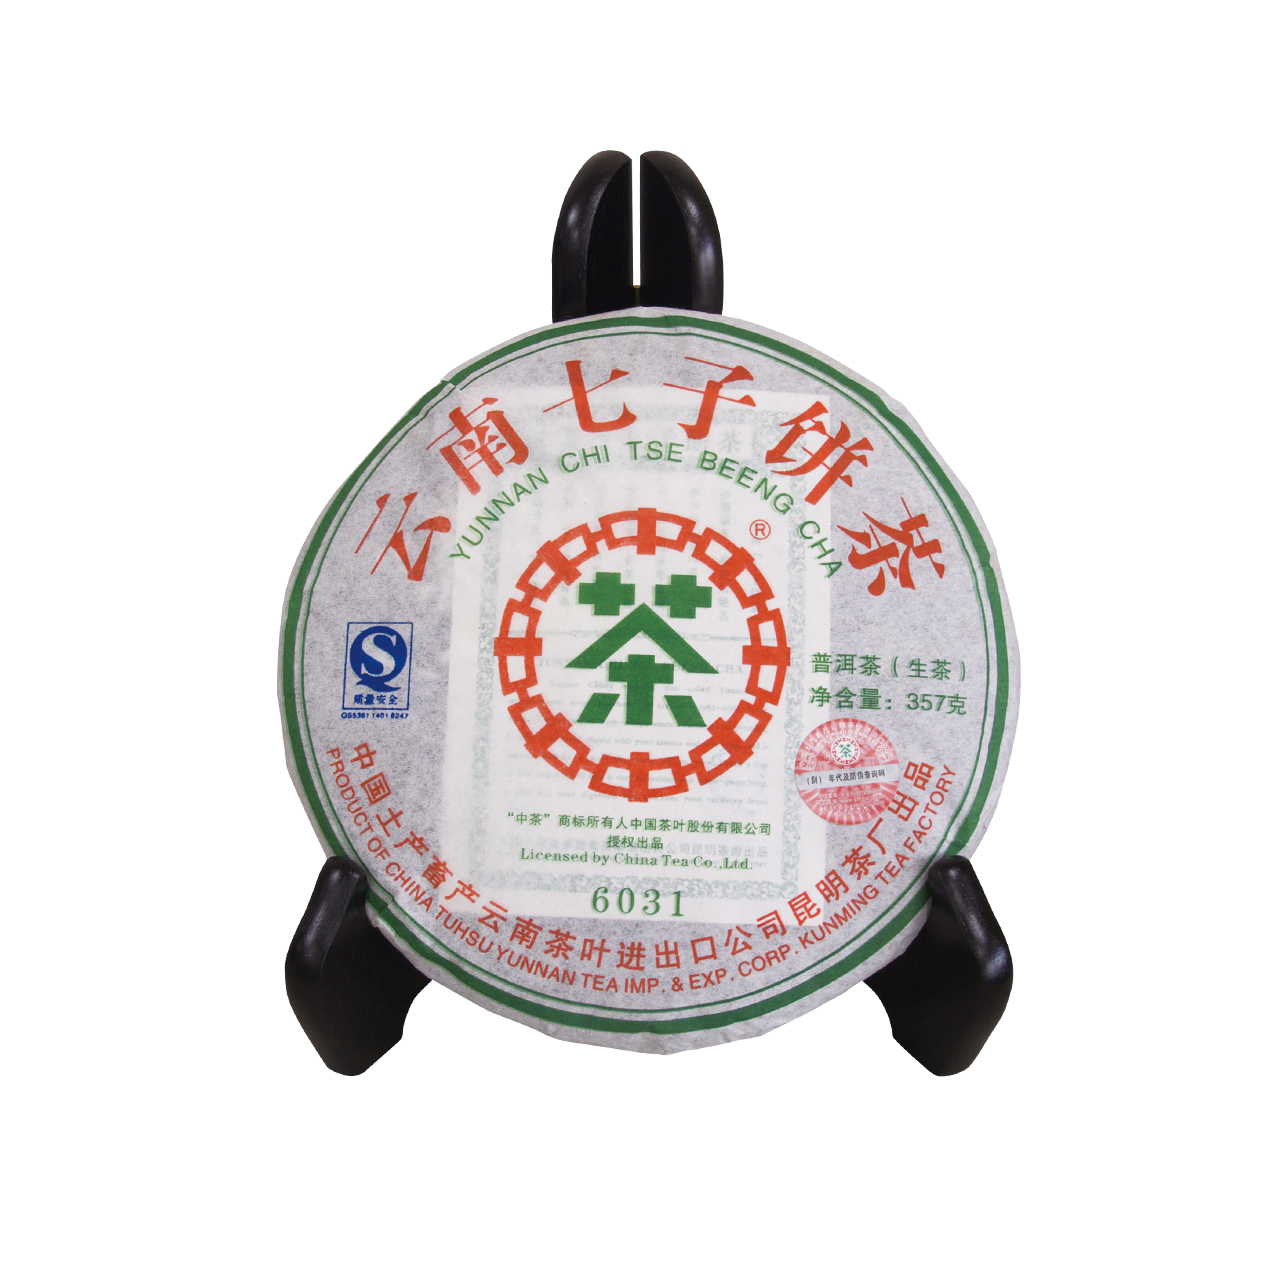 雲南七子餅茶(6031)(生茶)(買一送一)